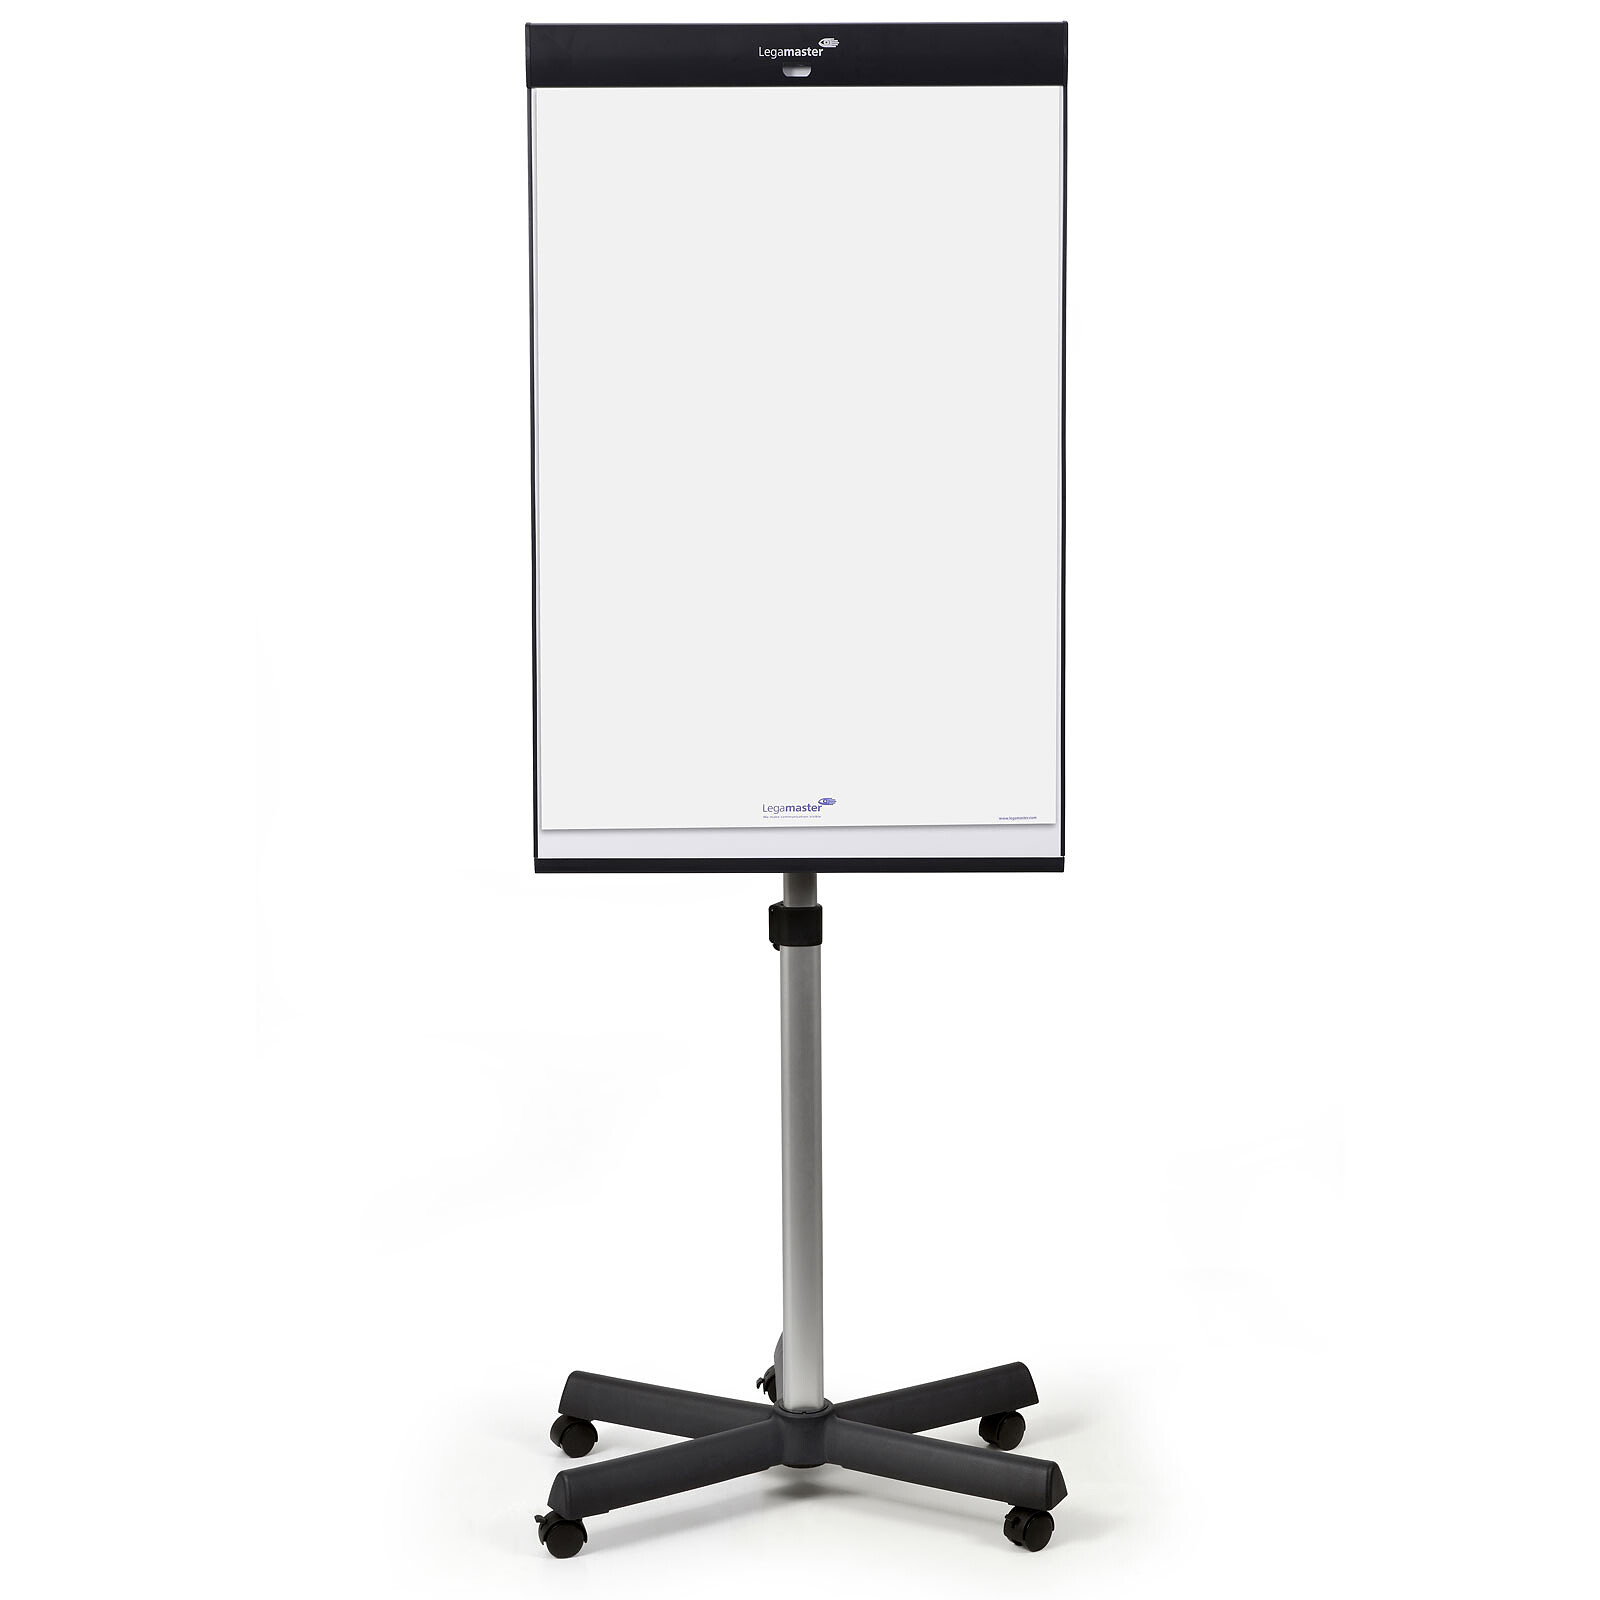 Chevalet de conférence blanc 60 x 90 cm, avec support, Hauteur réglable,  mobile, magnétique, paperboard effaçable